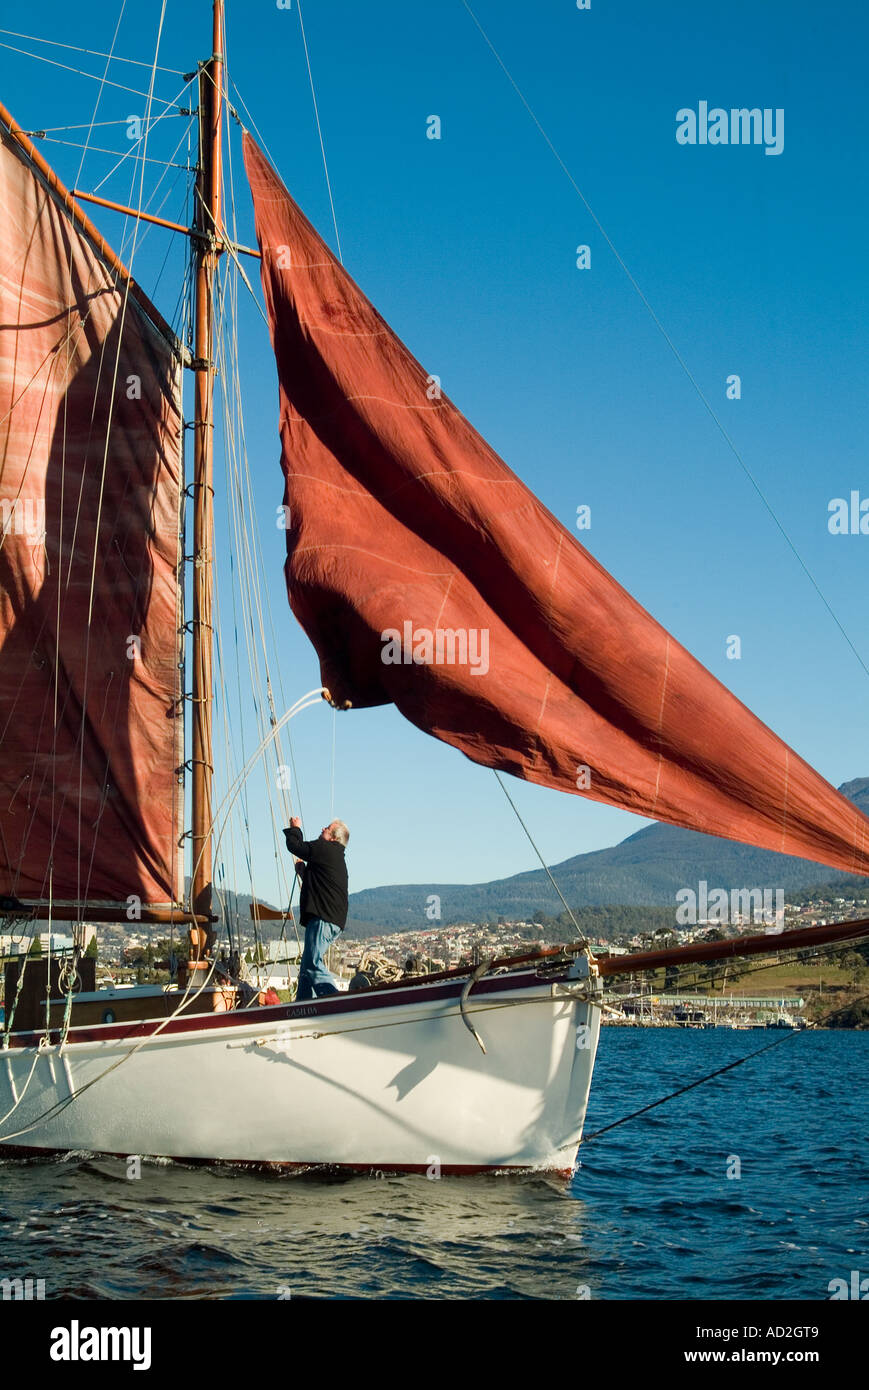 Casilda, eine 46 Fuß lange Hilfskeule, das letzte verbliebene traditionelle Segelboot in Tasmanien Stockfoto